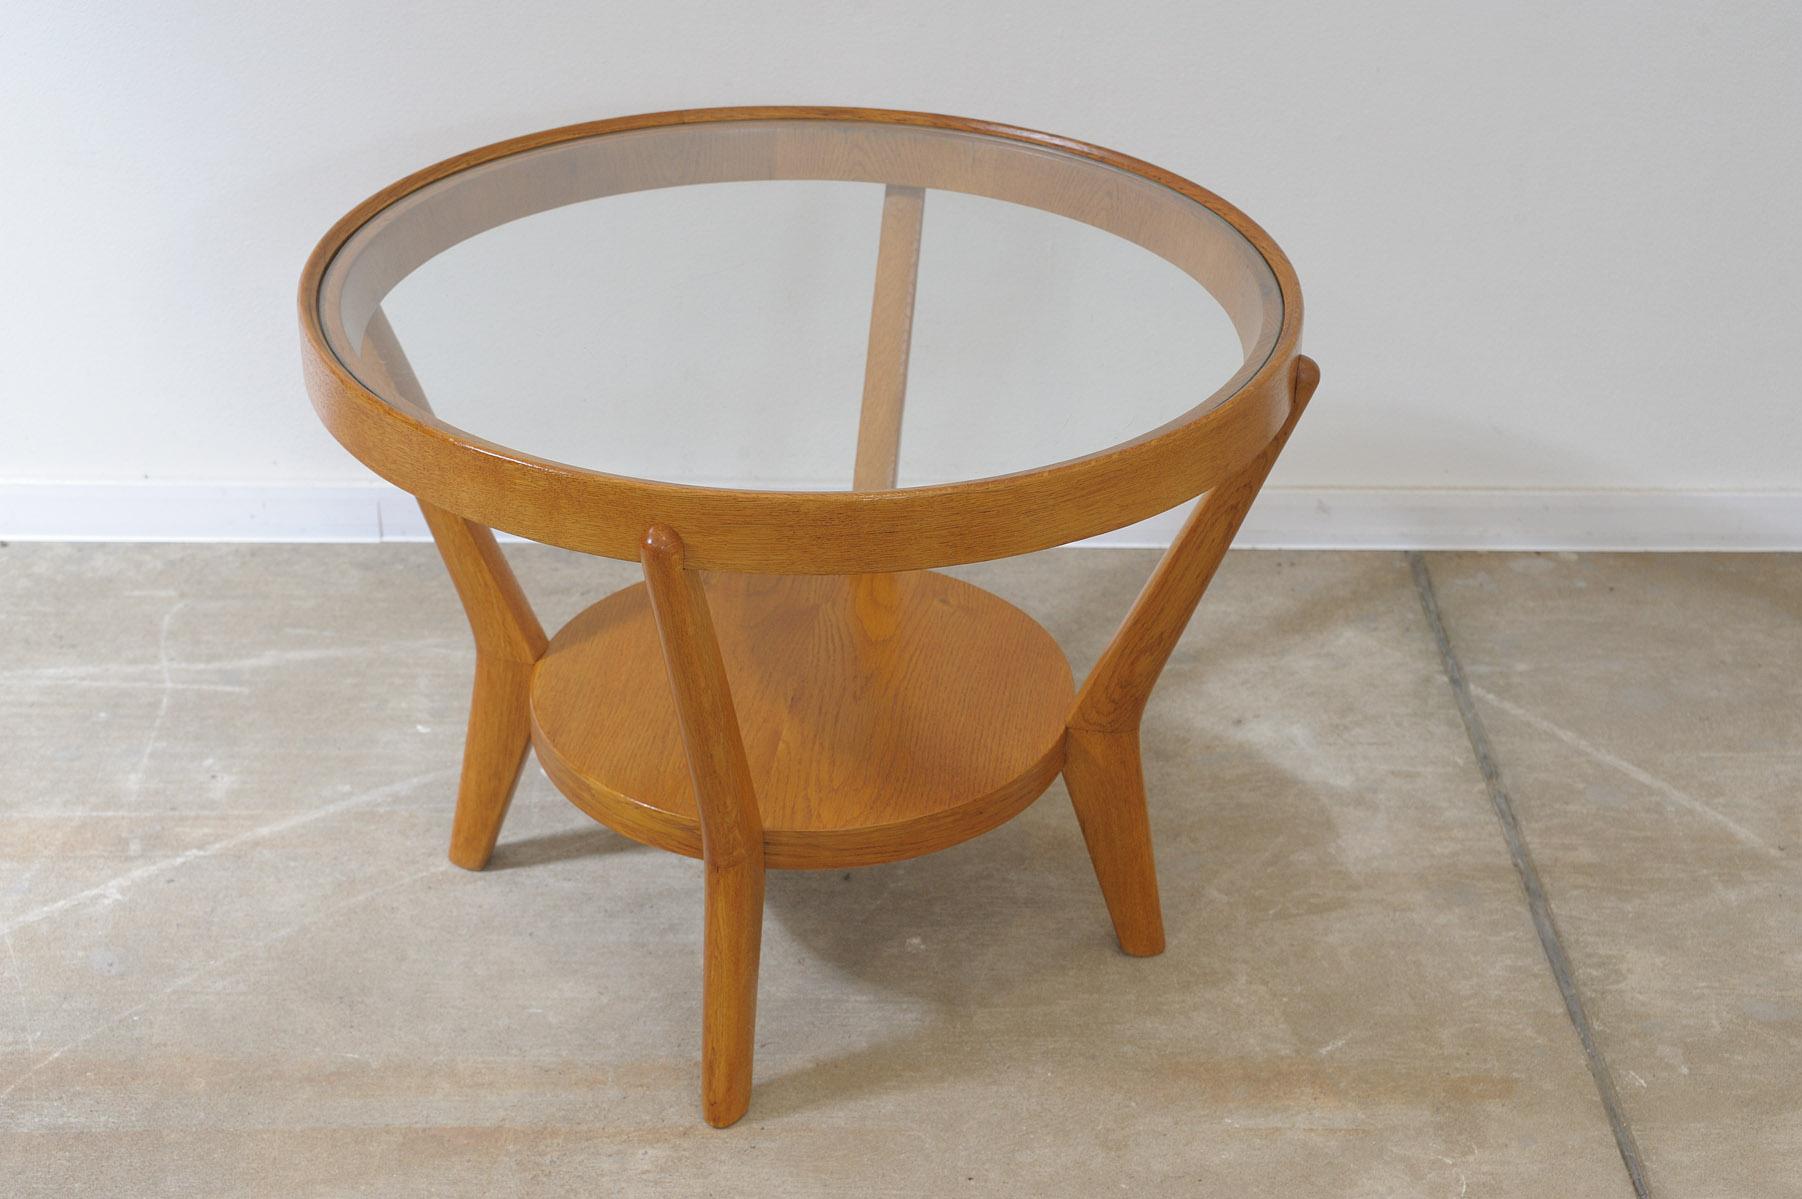 Runder Tisch aus Glas, entworfen von den berühmten Architekten Kropacek & Kozelka im Jahr 1944. Tschechoslowakei. Er kann als Couchtisch oder Beistelltisch verwendet werden. Massive Eiche. In ausgezeichnetem Zustand, vollständig renoviert.

Höhe: 56